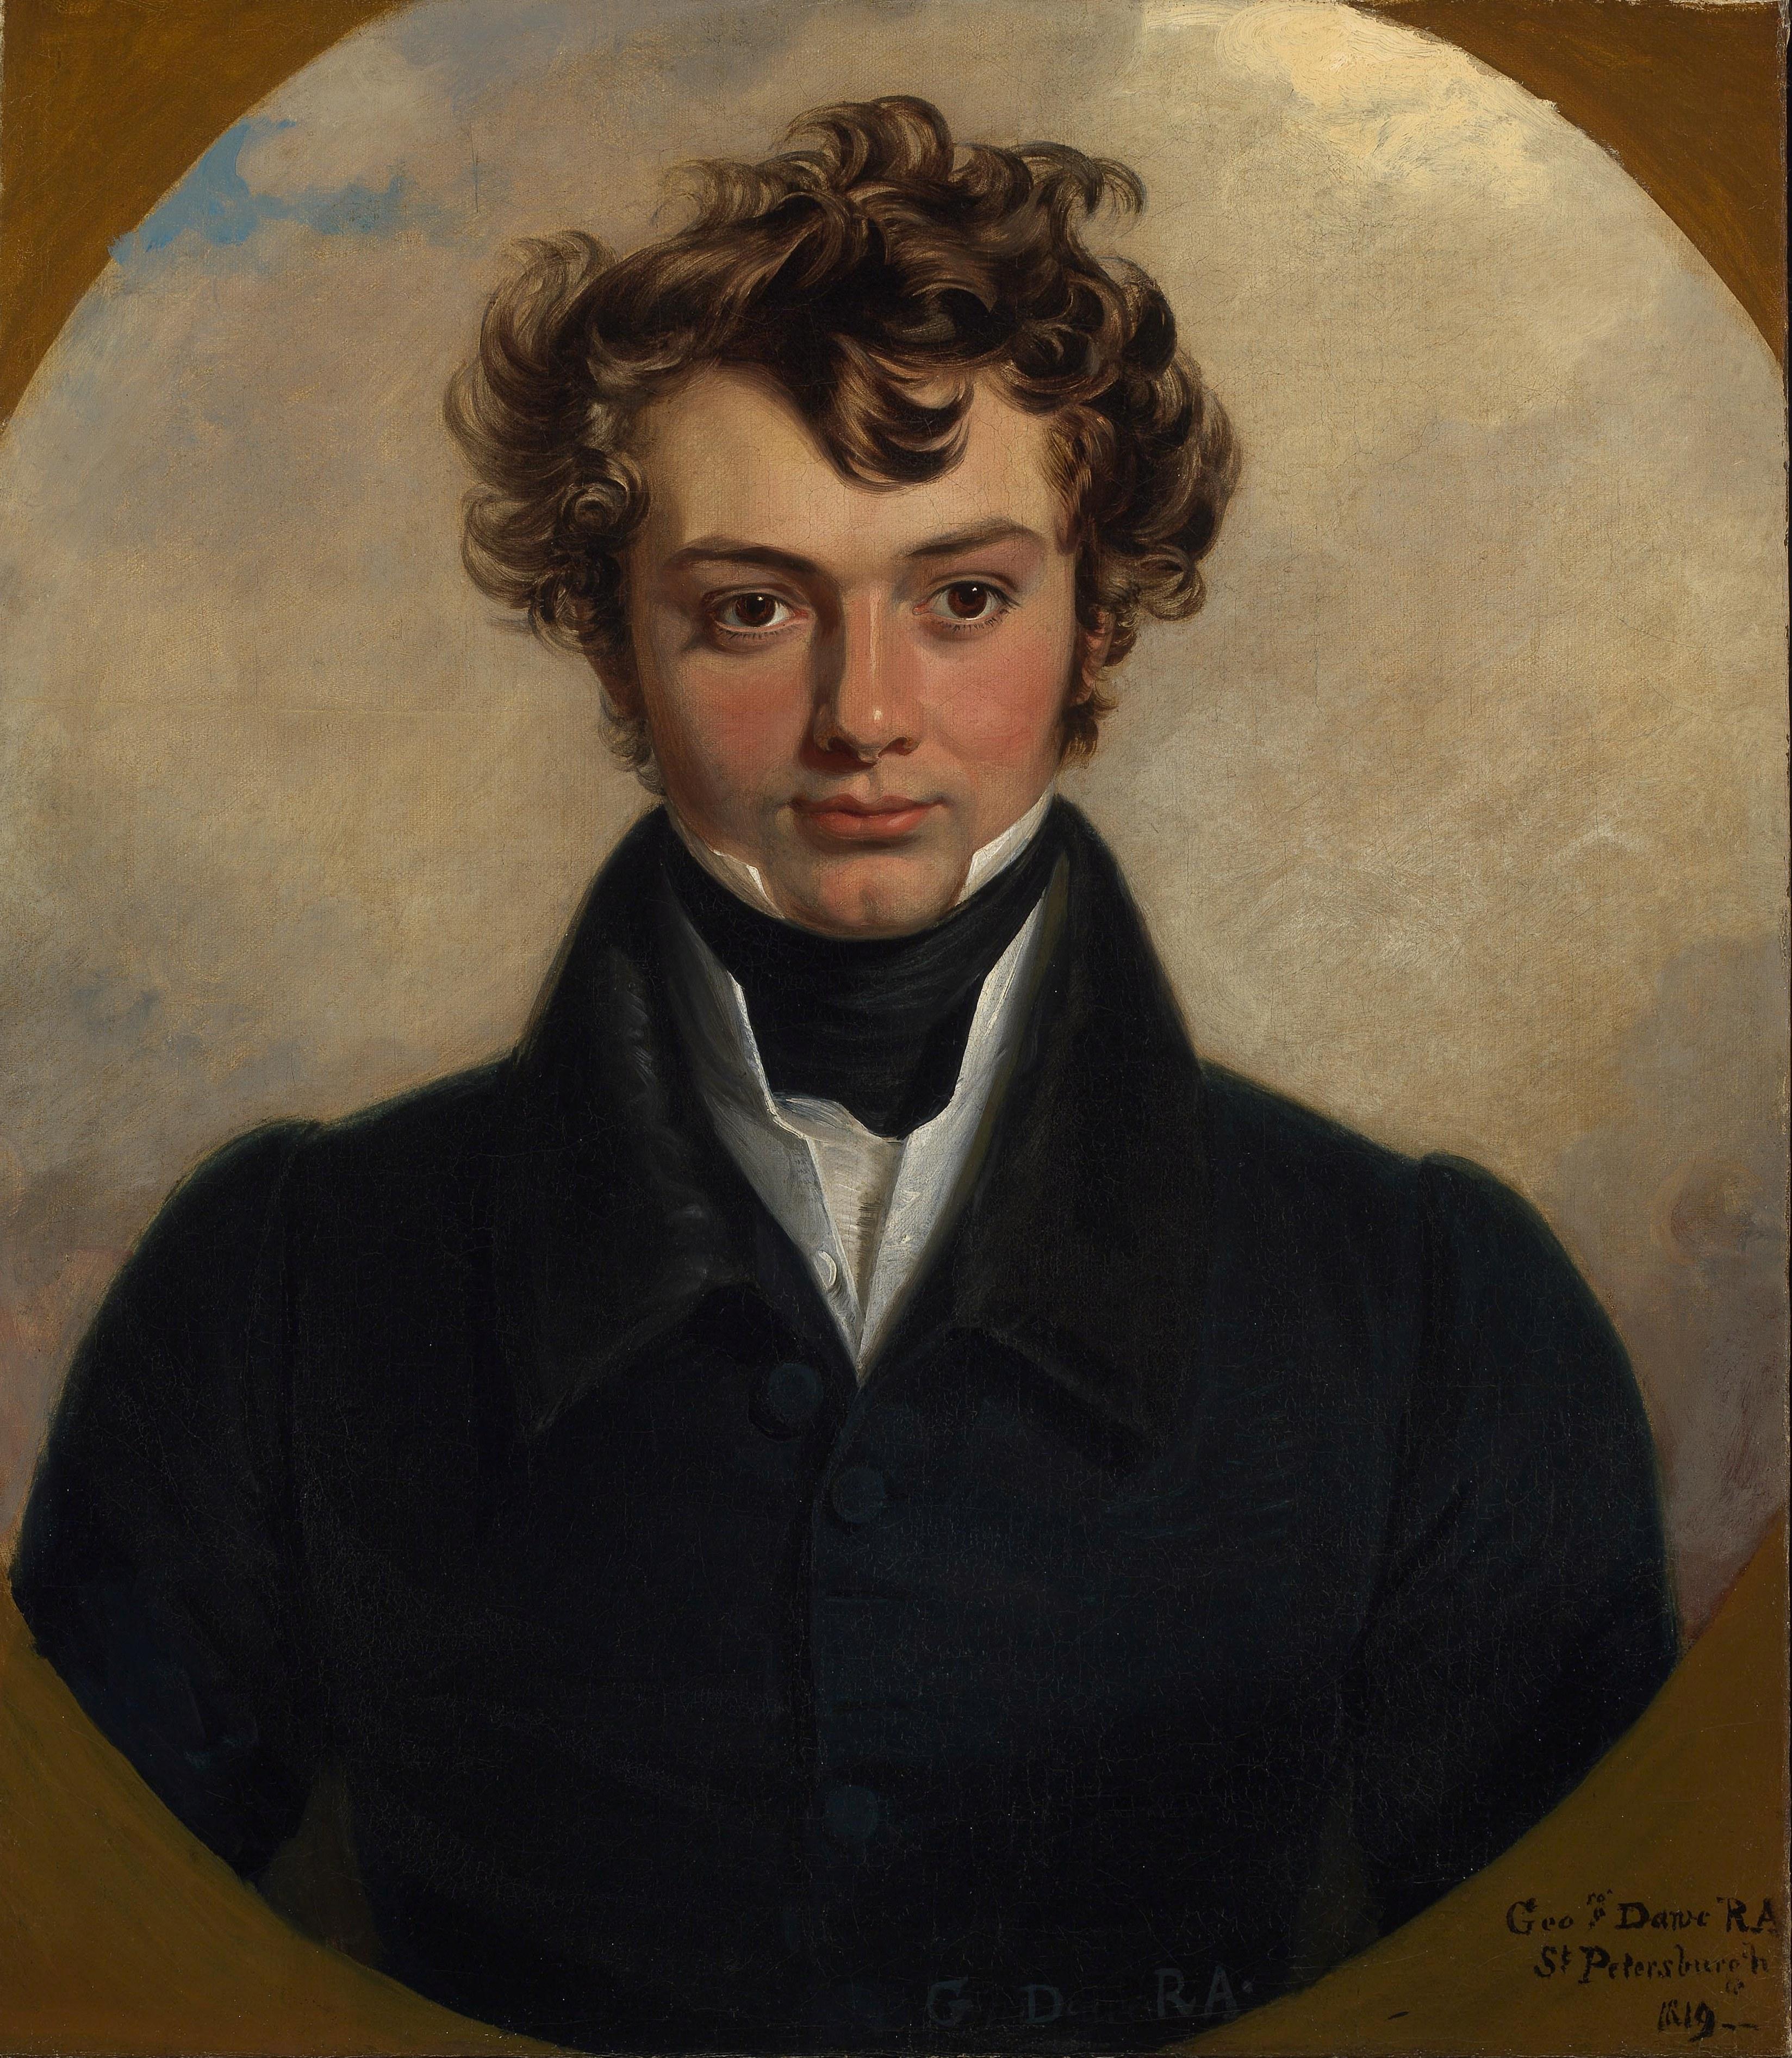 Porträt aus dem 19. Jahrhundert, gemalt 1819 in St. Petersburg. – Painting von George Dawe